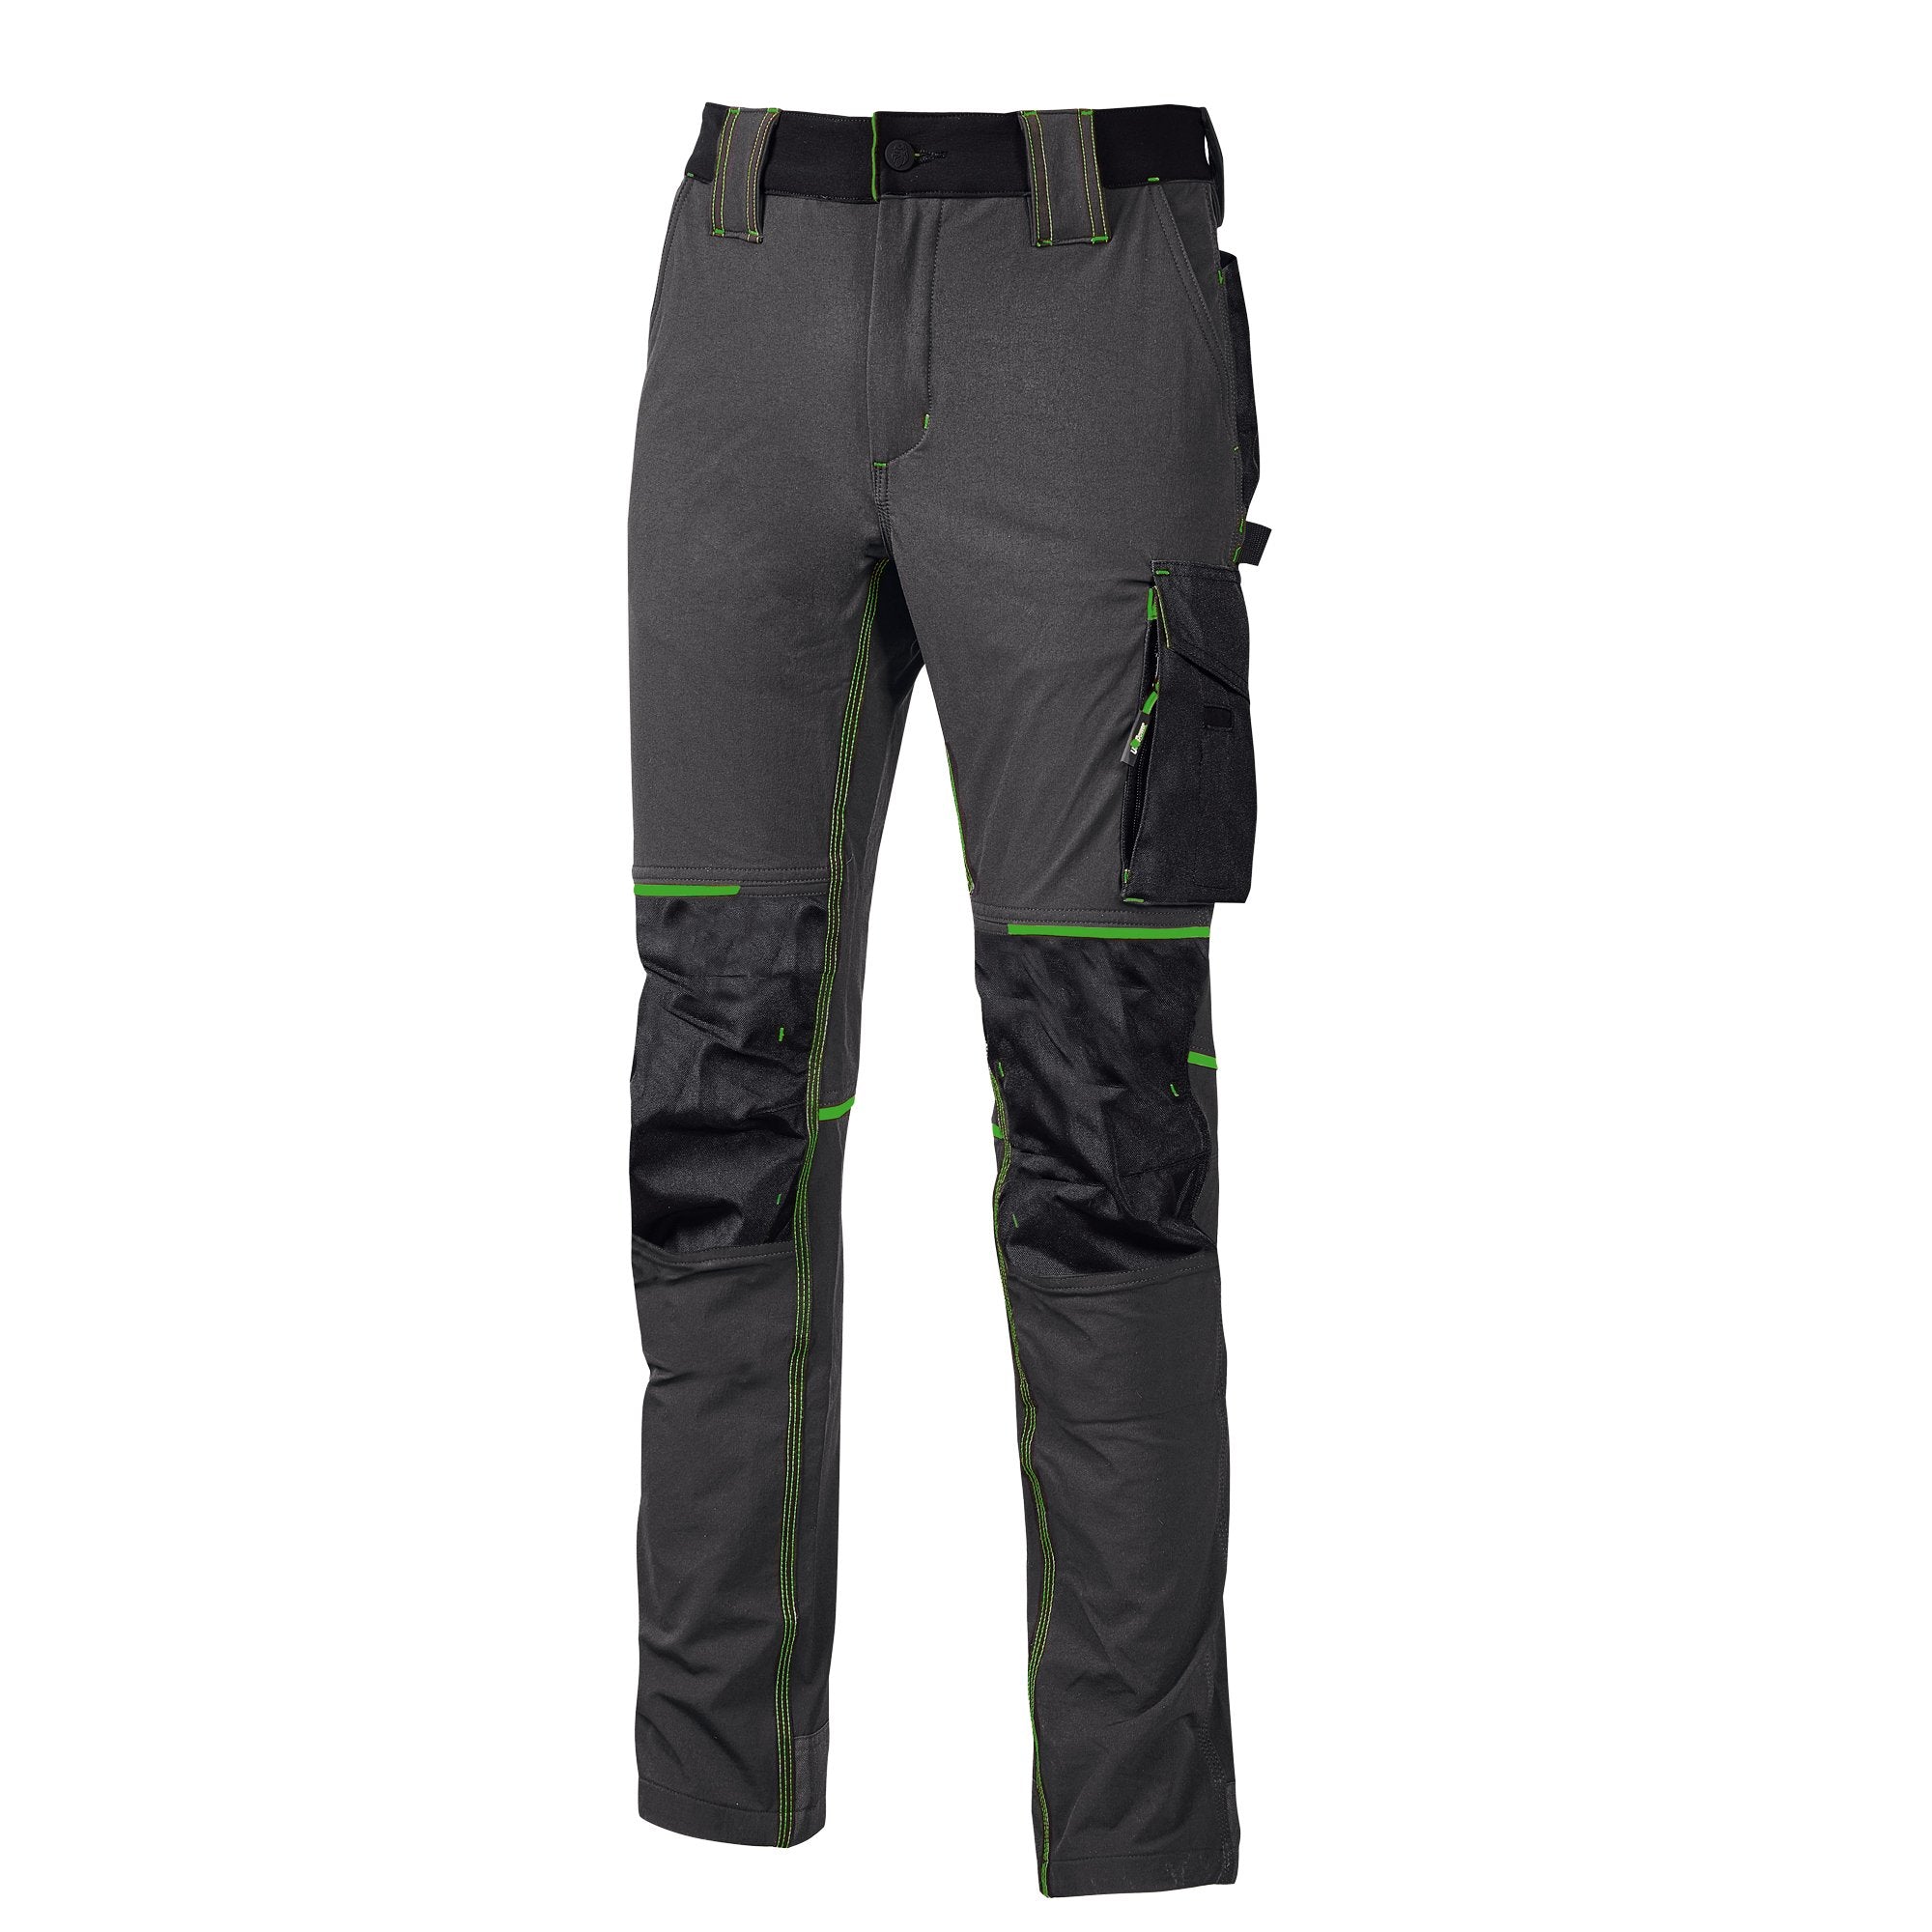 u-power-pantaloni-lavoro-atom-taglia-m-grigio-verde